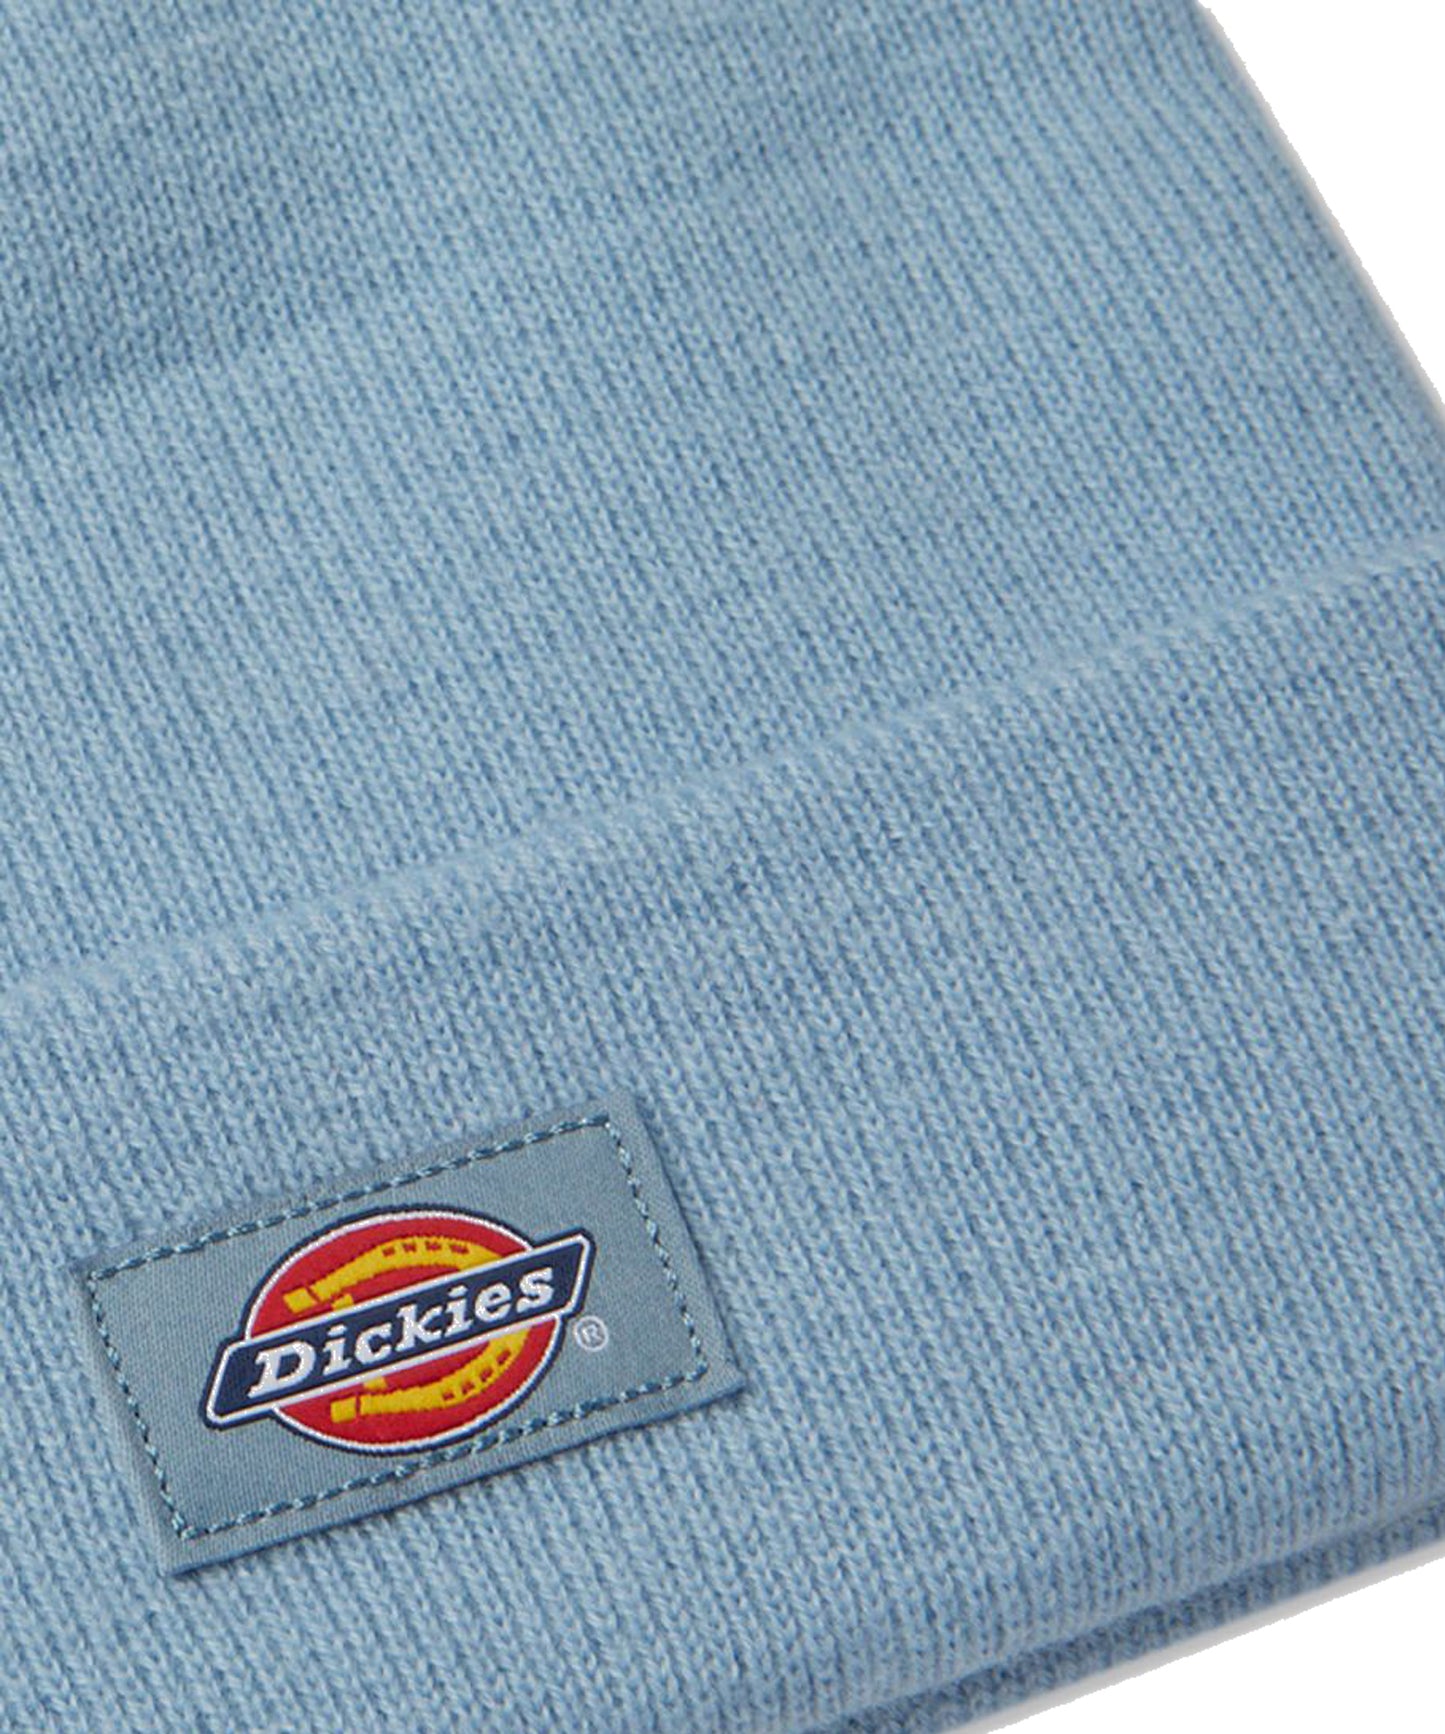 dickies-gorro color-azul-100 por cien acrilico-logo dickies en la parte frontal.